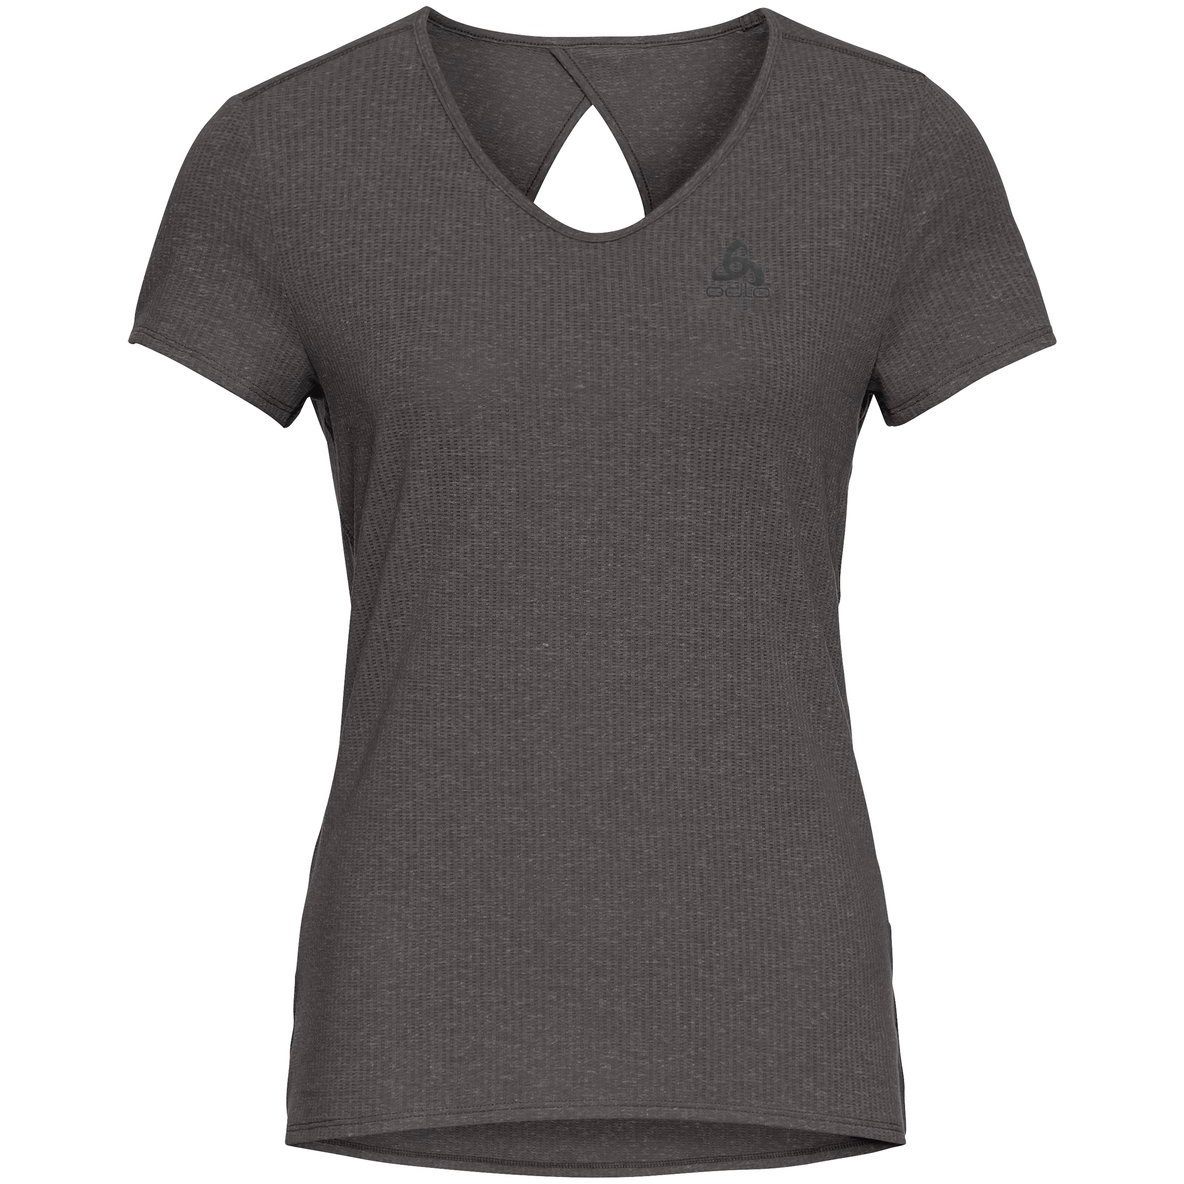 Produktbild von Odlo Halden Linencool T-Shirt Damen - dark grey melange